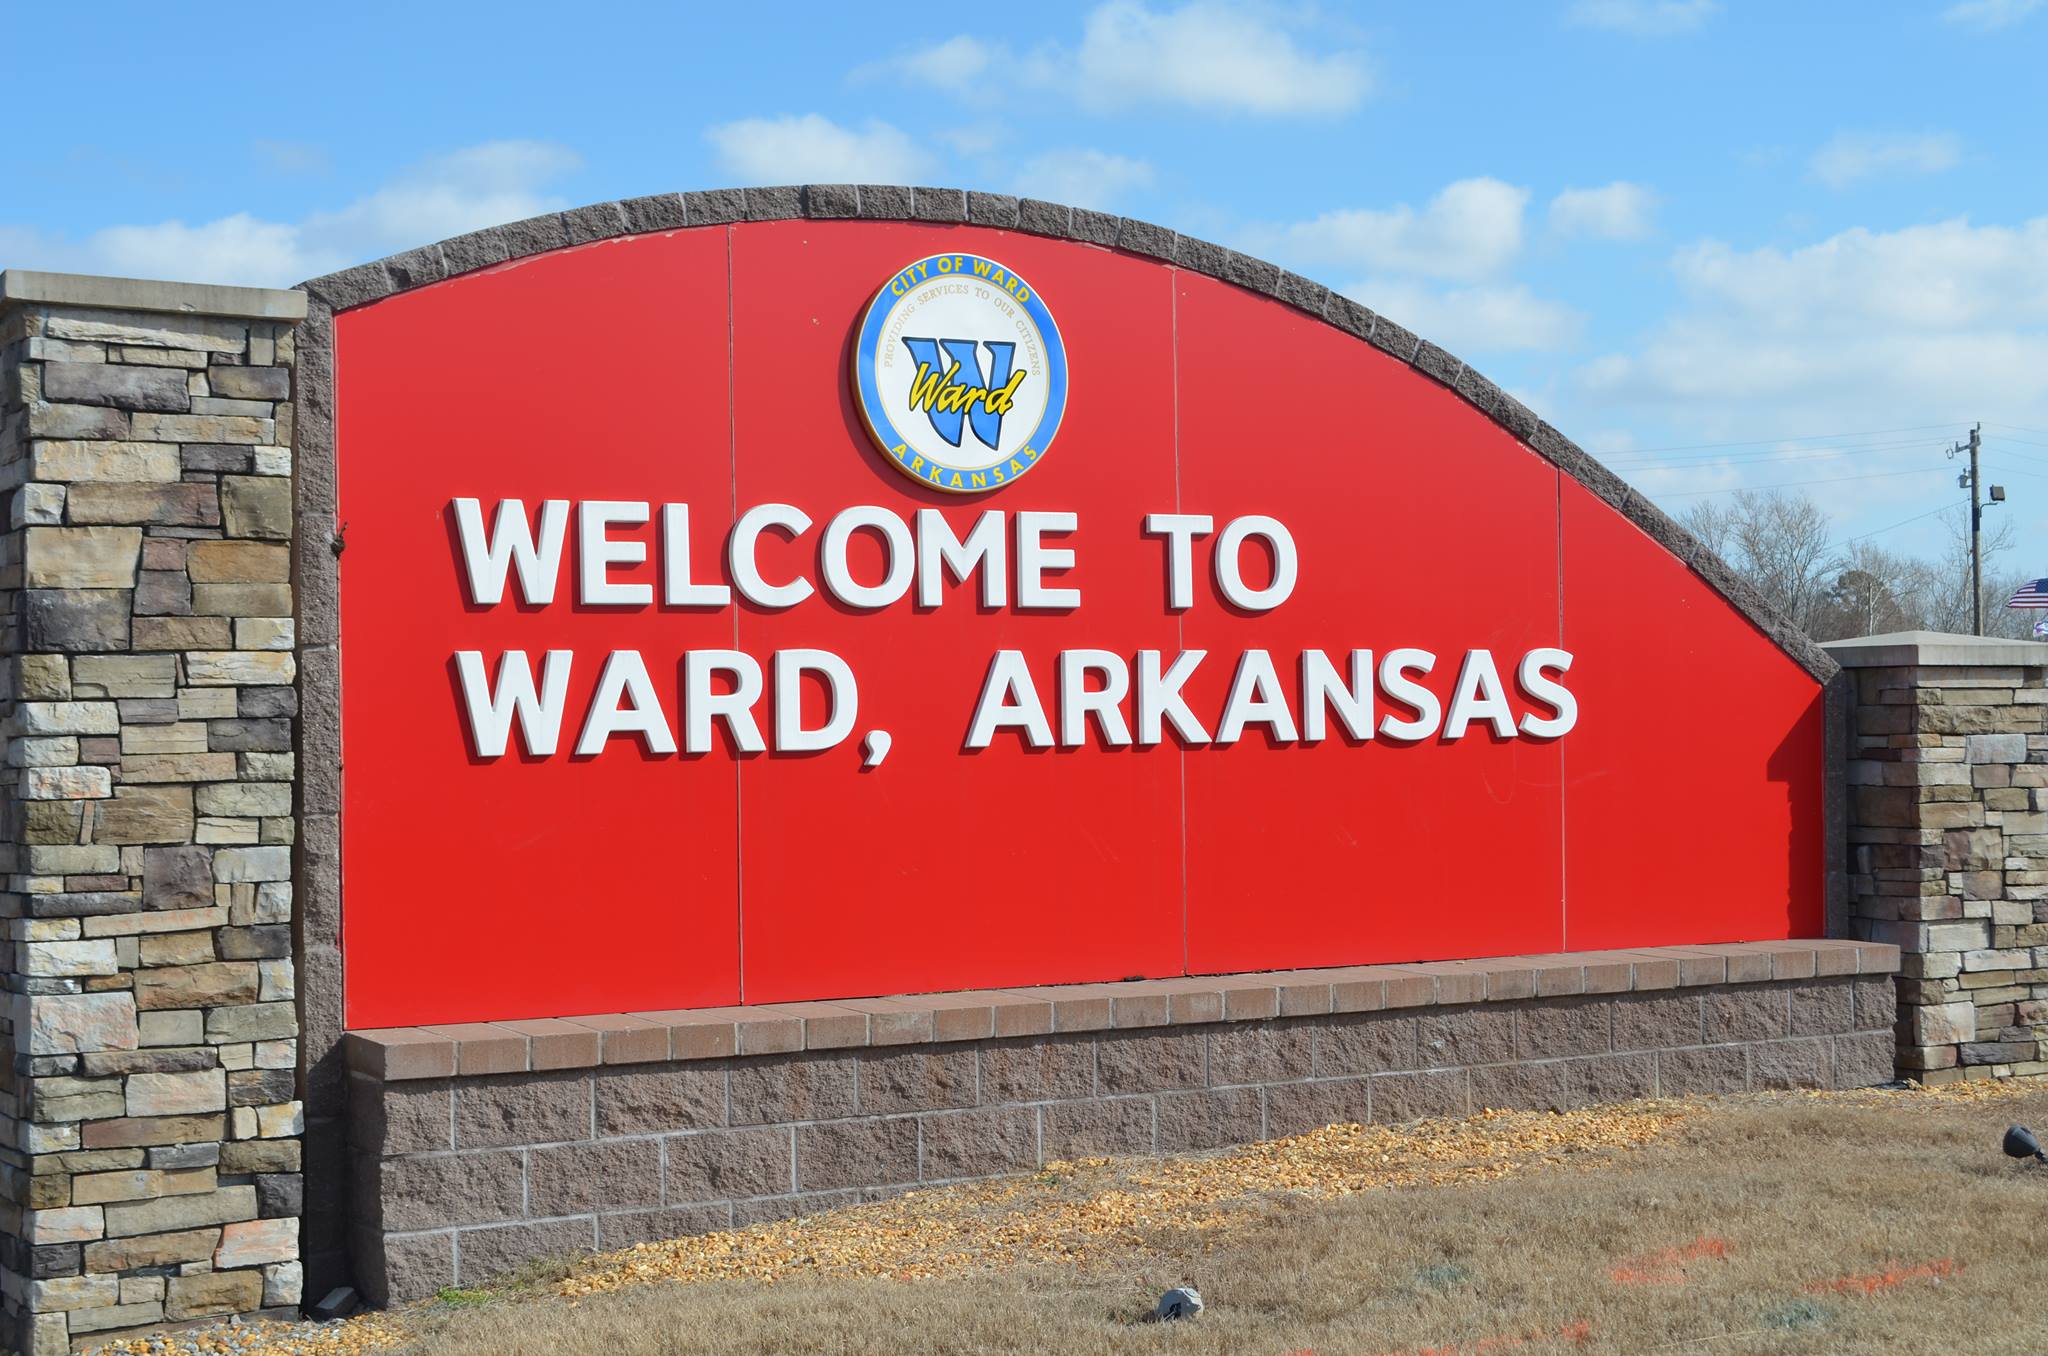 City of Ward logo